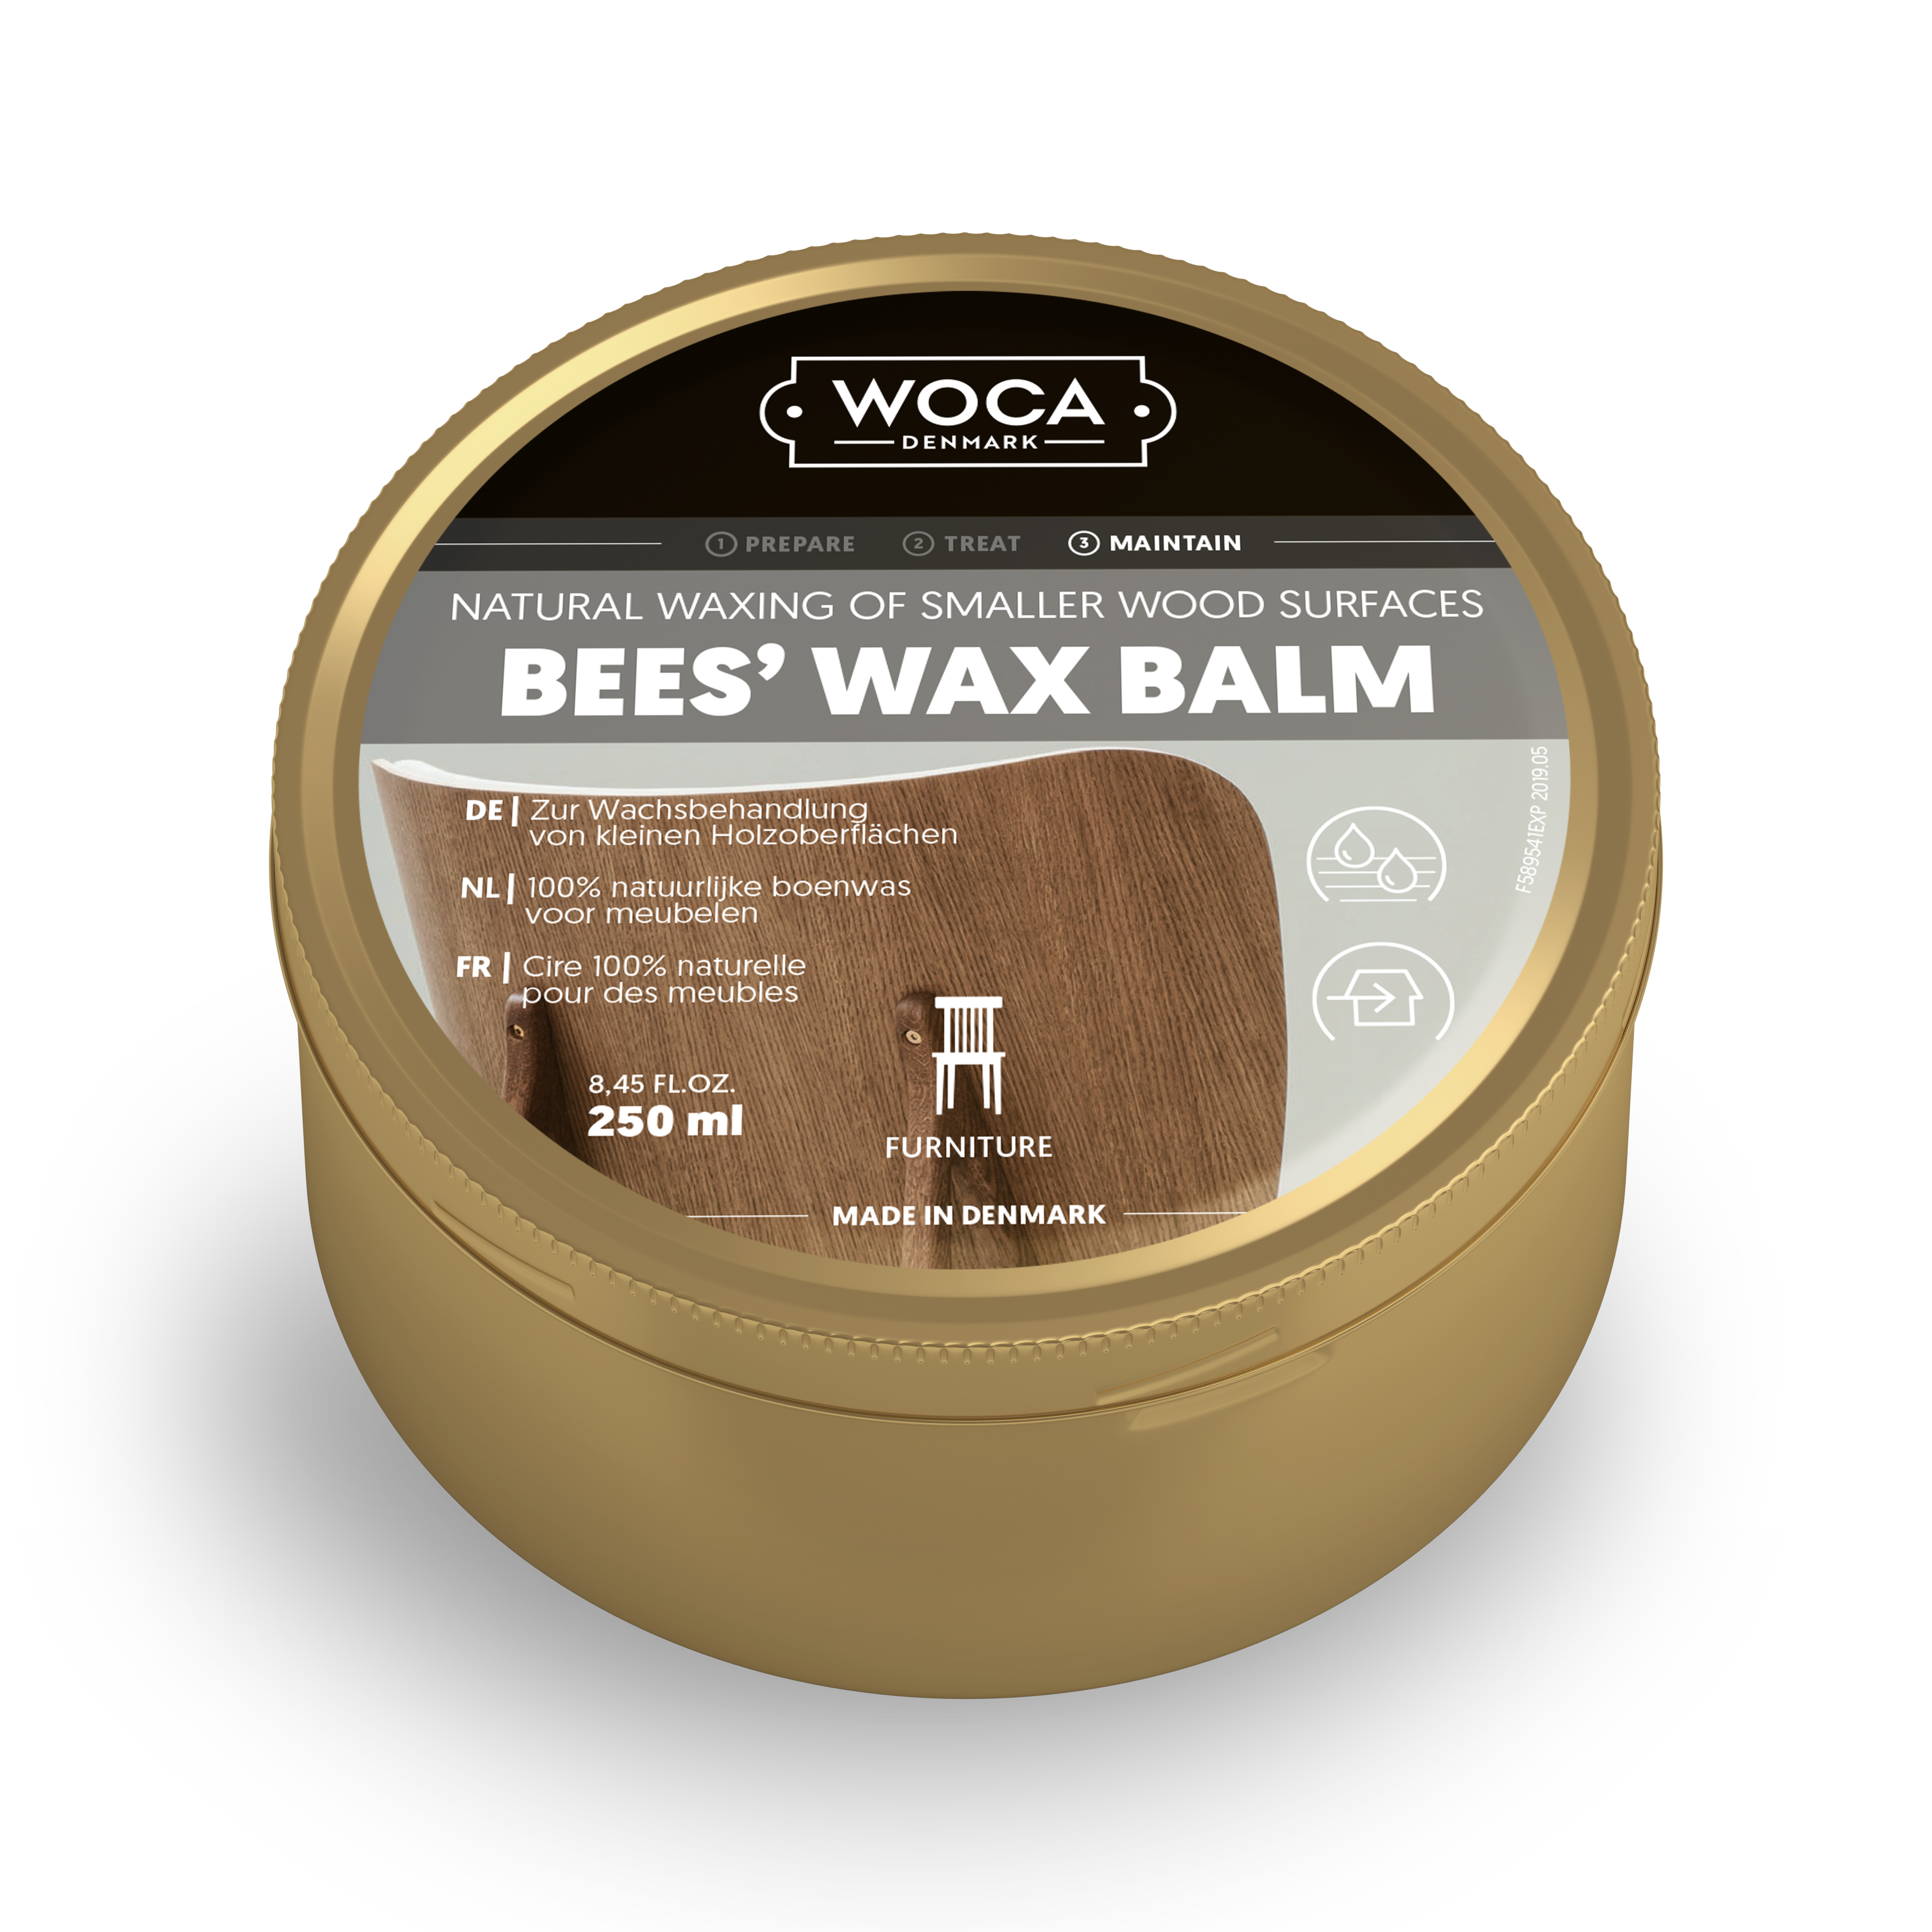 Bee's Wax Balm - Belgium - FR